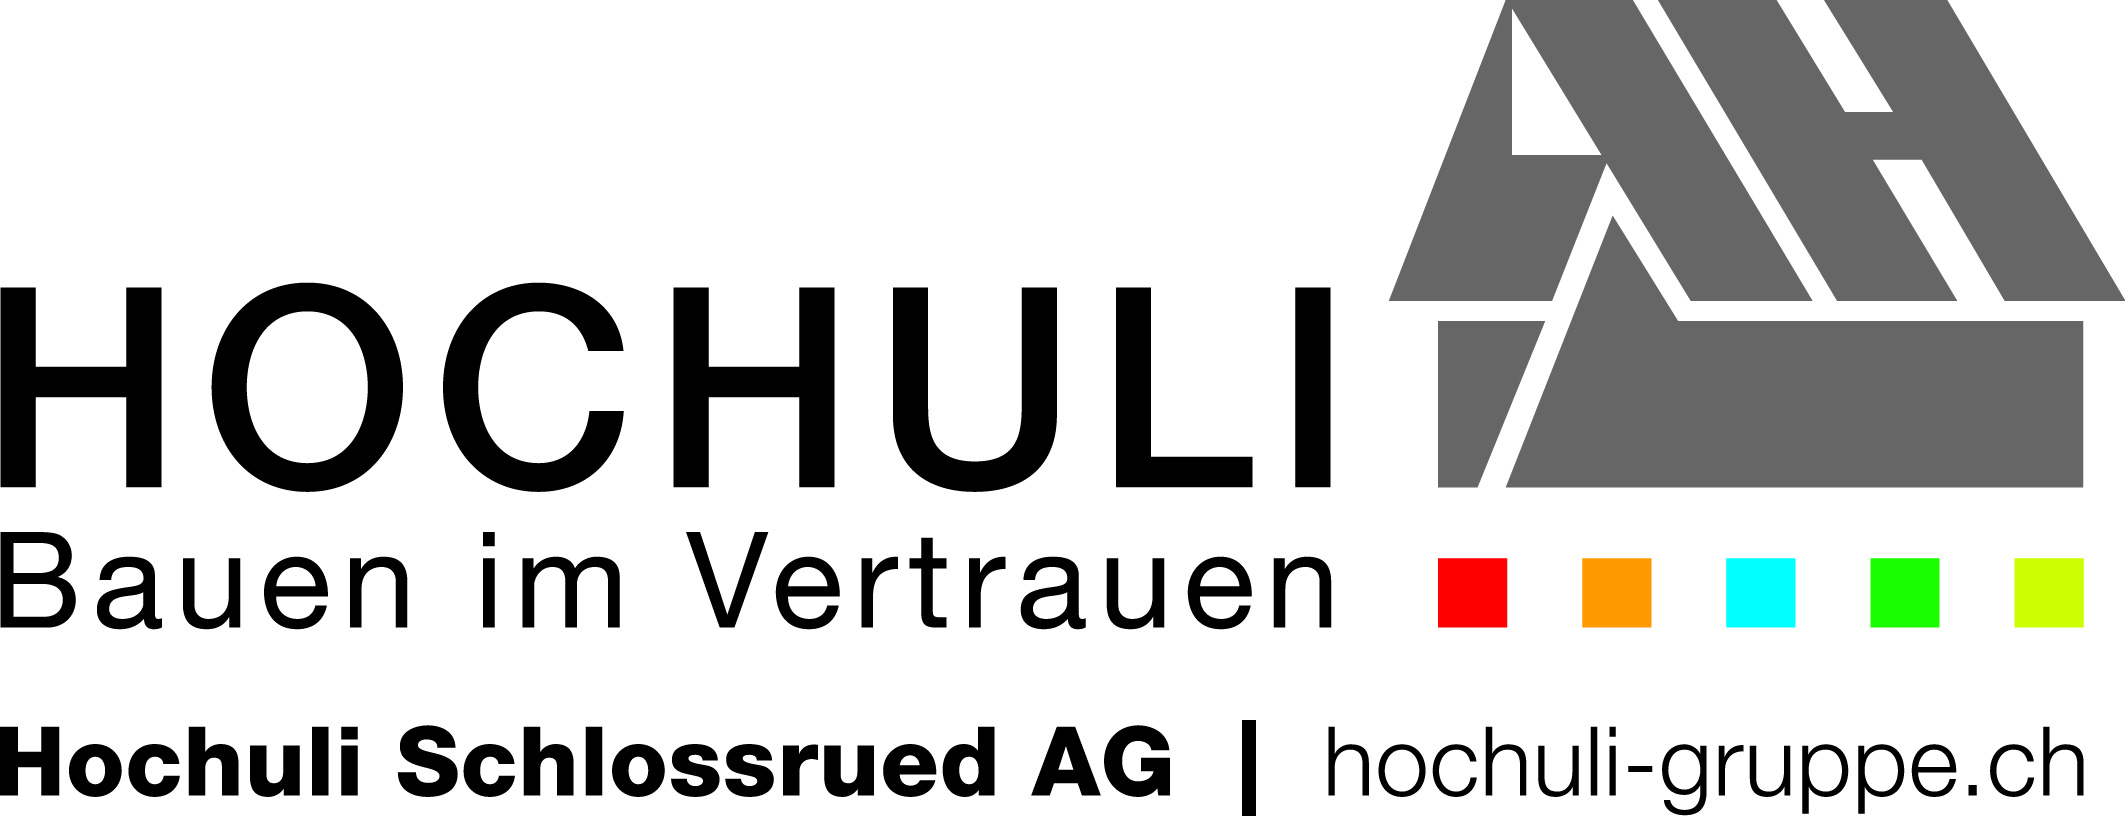 Hochuli Schlossrued AG 